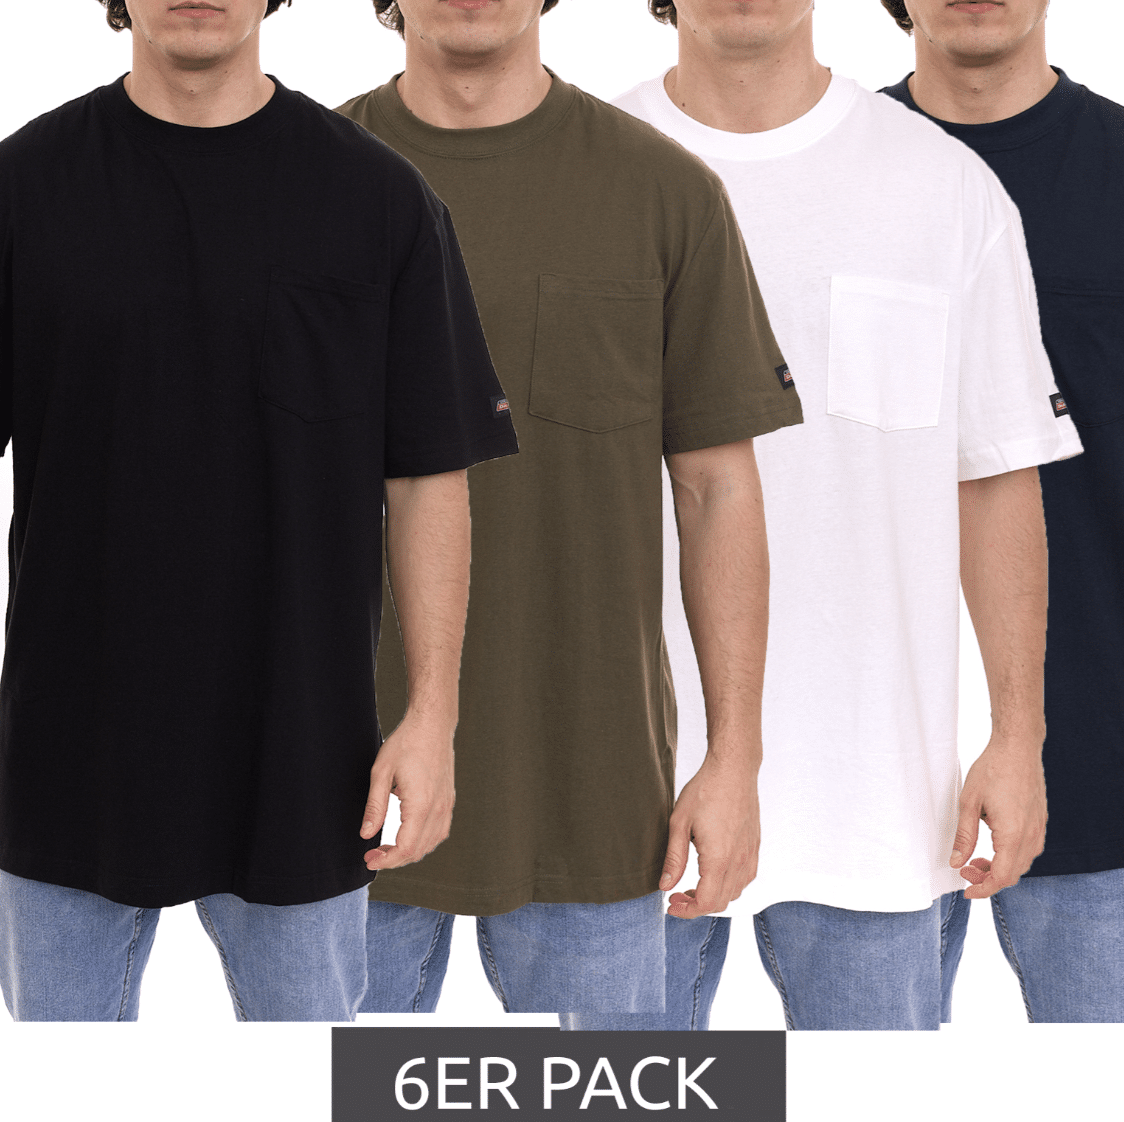 Thumbnail Jetzt noch günstiger ✔️ nur 2,50€ pro Shirt ✔️ Dickies Basic Herren T-Shirts 6er Pack für 15€ 🎉